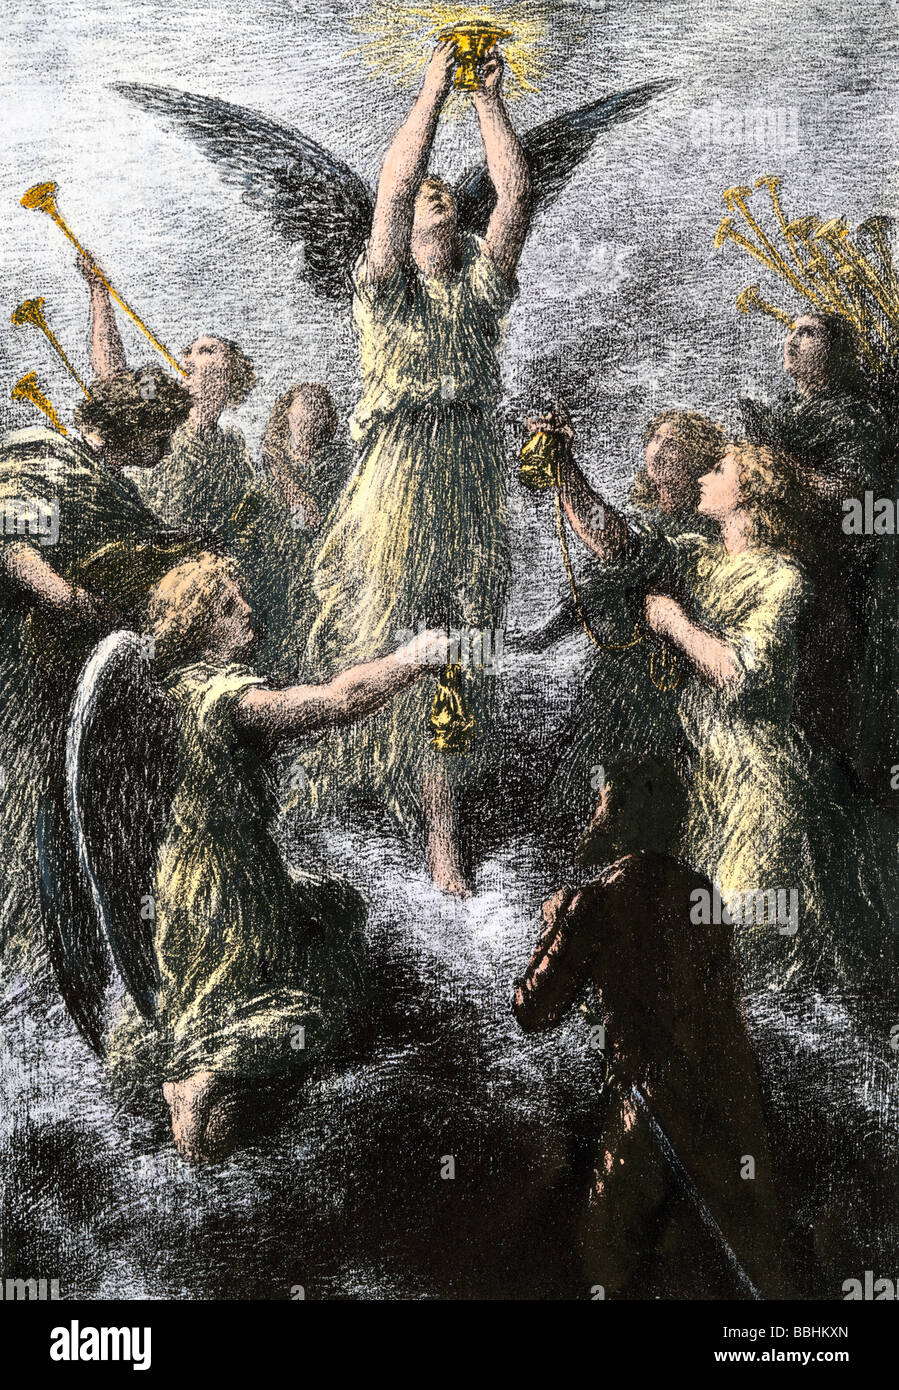 Célébration des anges dans le prélude de Lohengrin de Wagner. La gravure à la main, d'une illustration Fantin Latour Banque D'Images